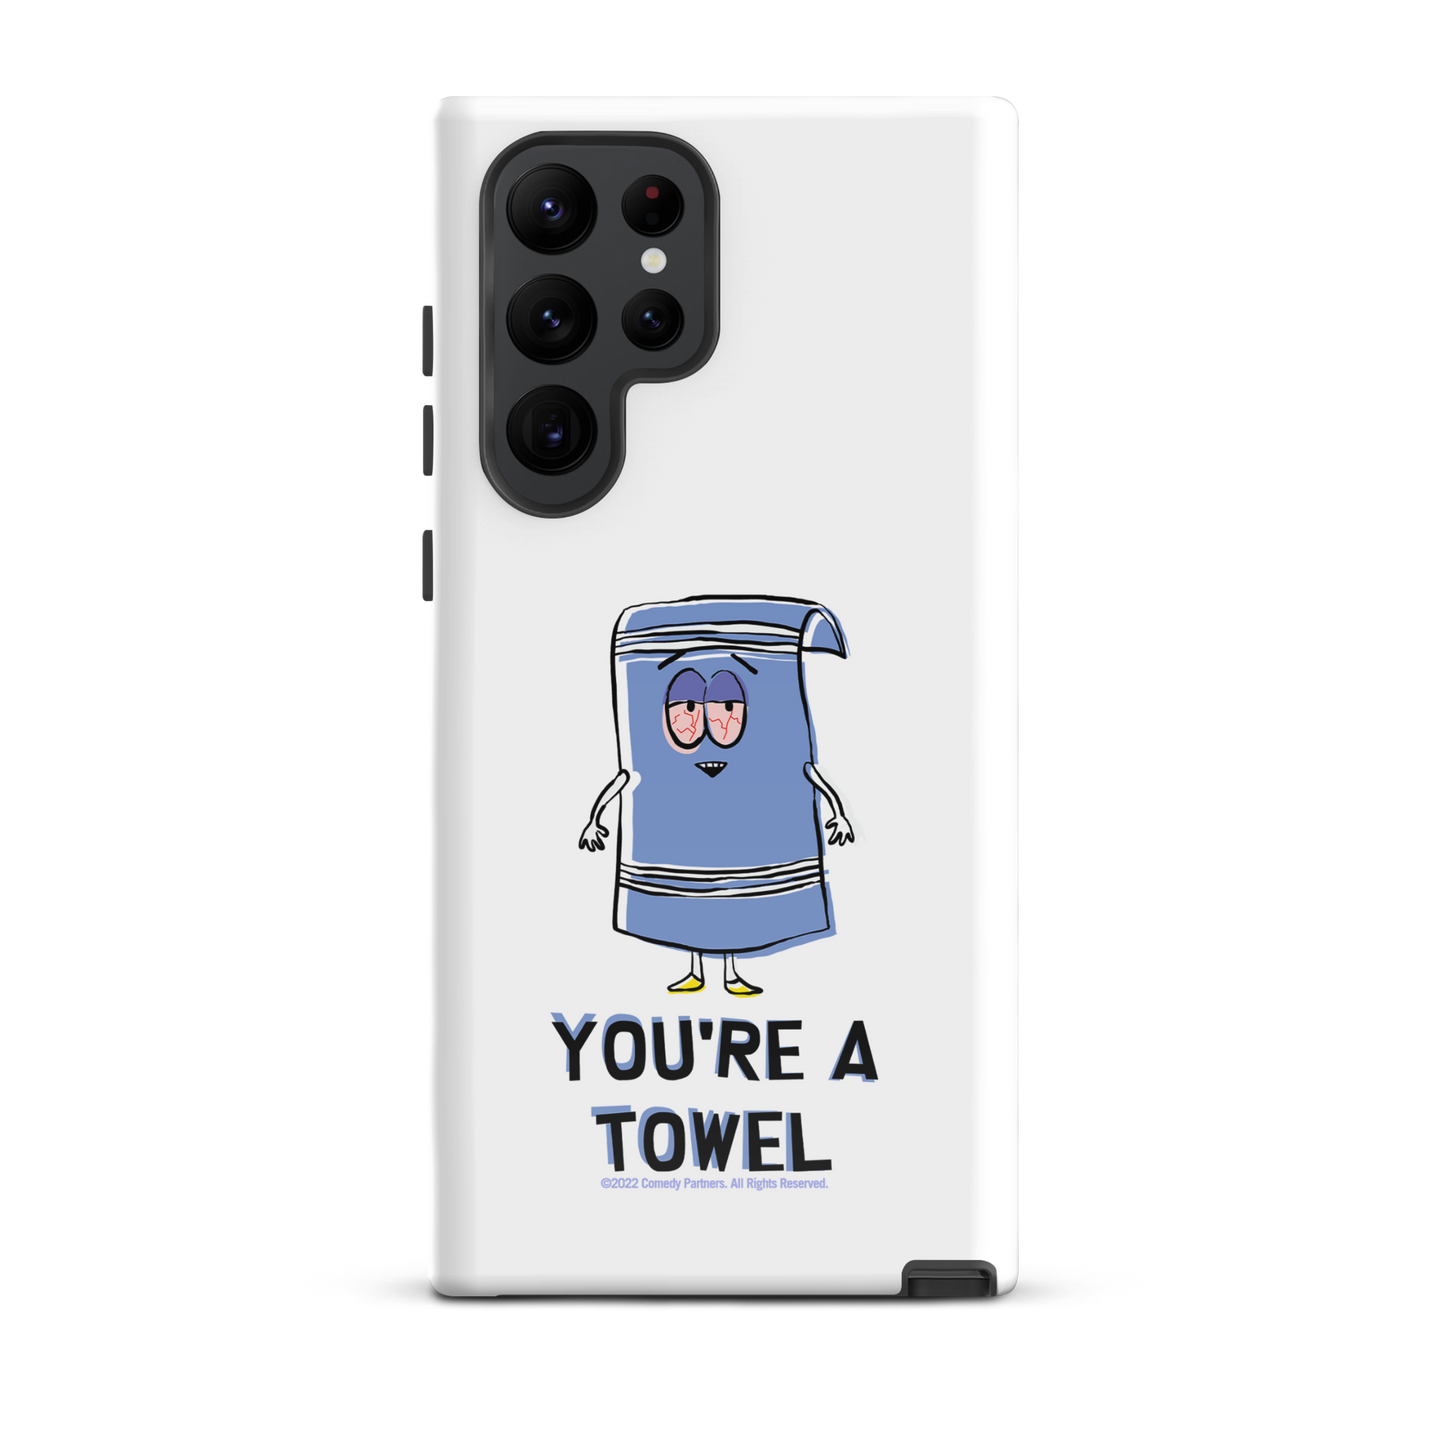 South Park Towelie You're a Towel Tough Funda para teléfono - Samsung